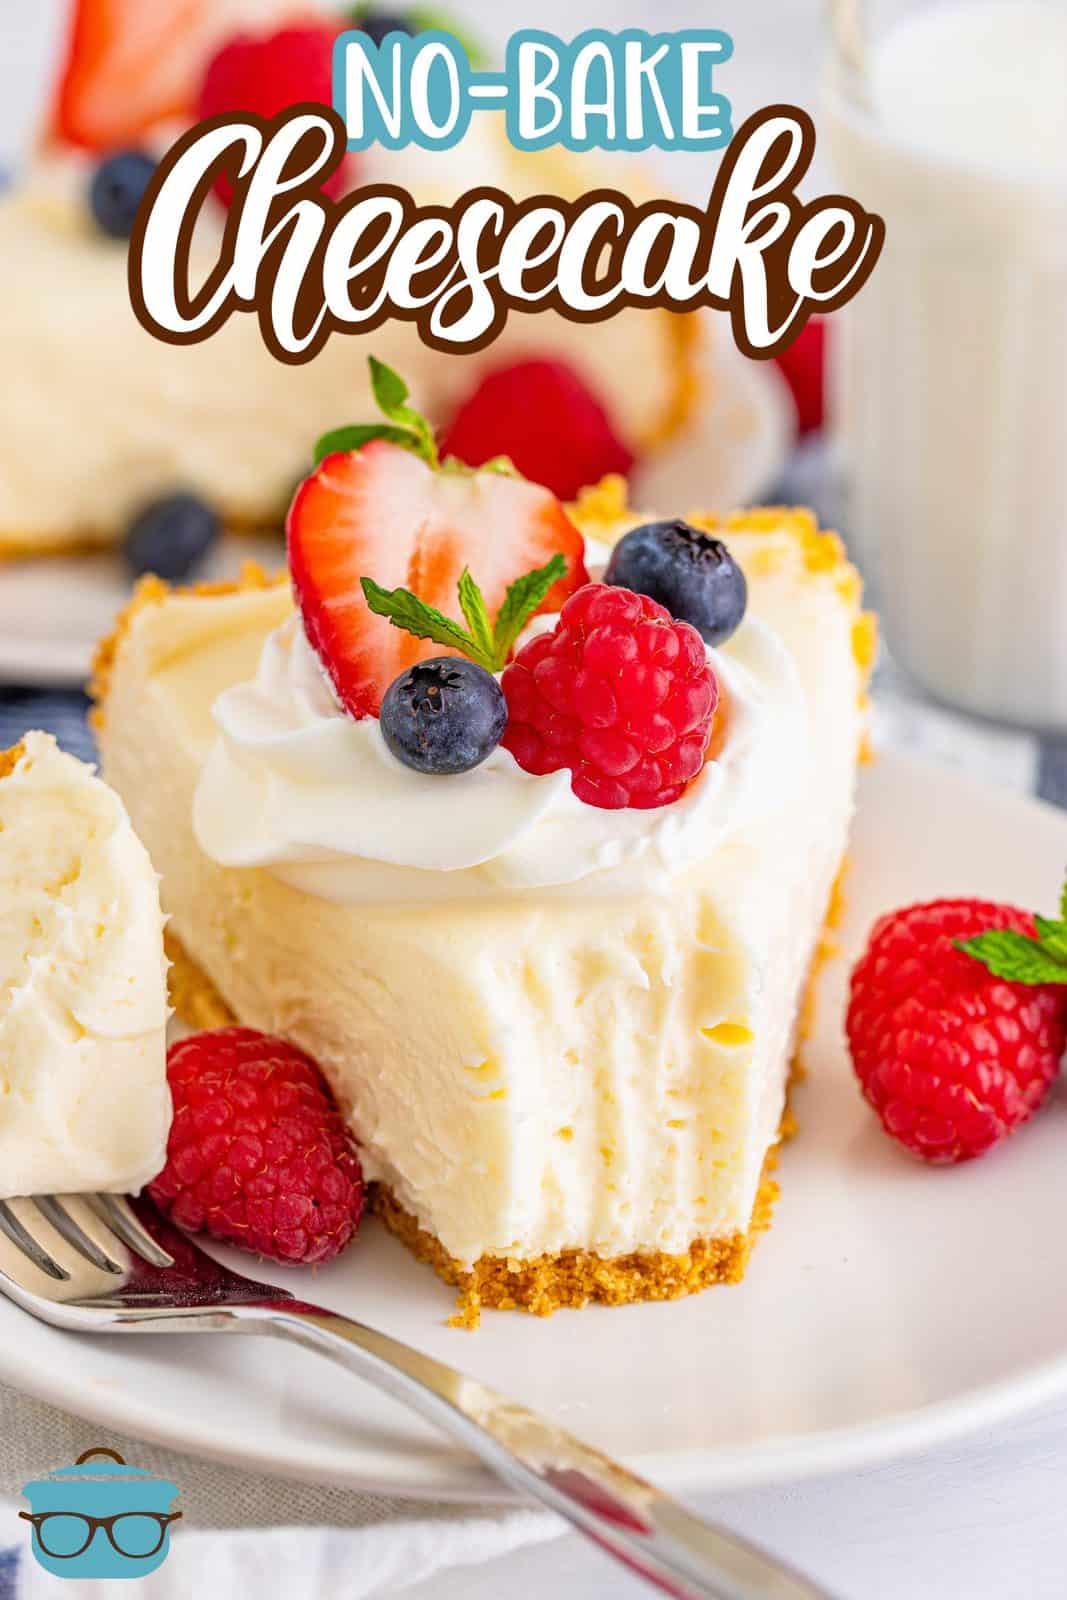 Immagine Pinterest di una fetta di cheesecake senza cottura con il morso tirato fuori e condita con frutta.